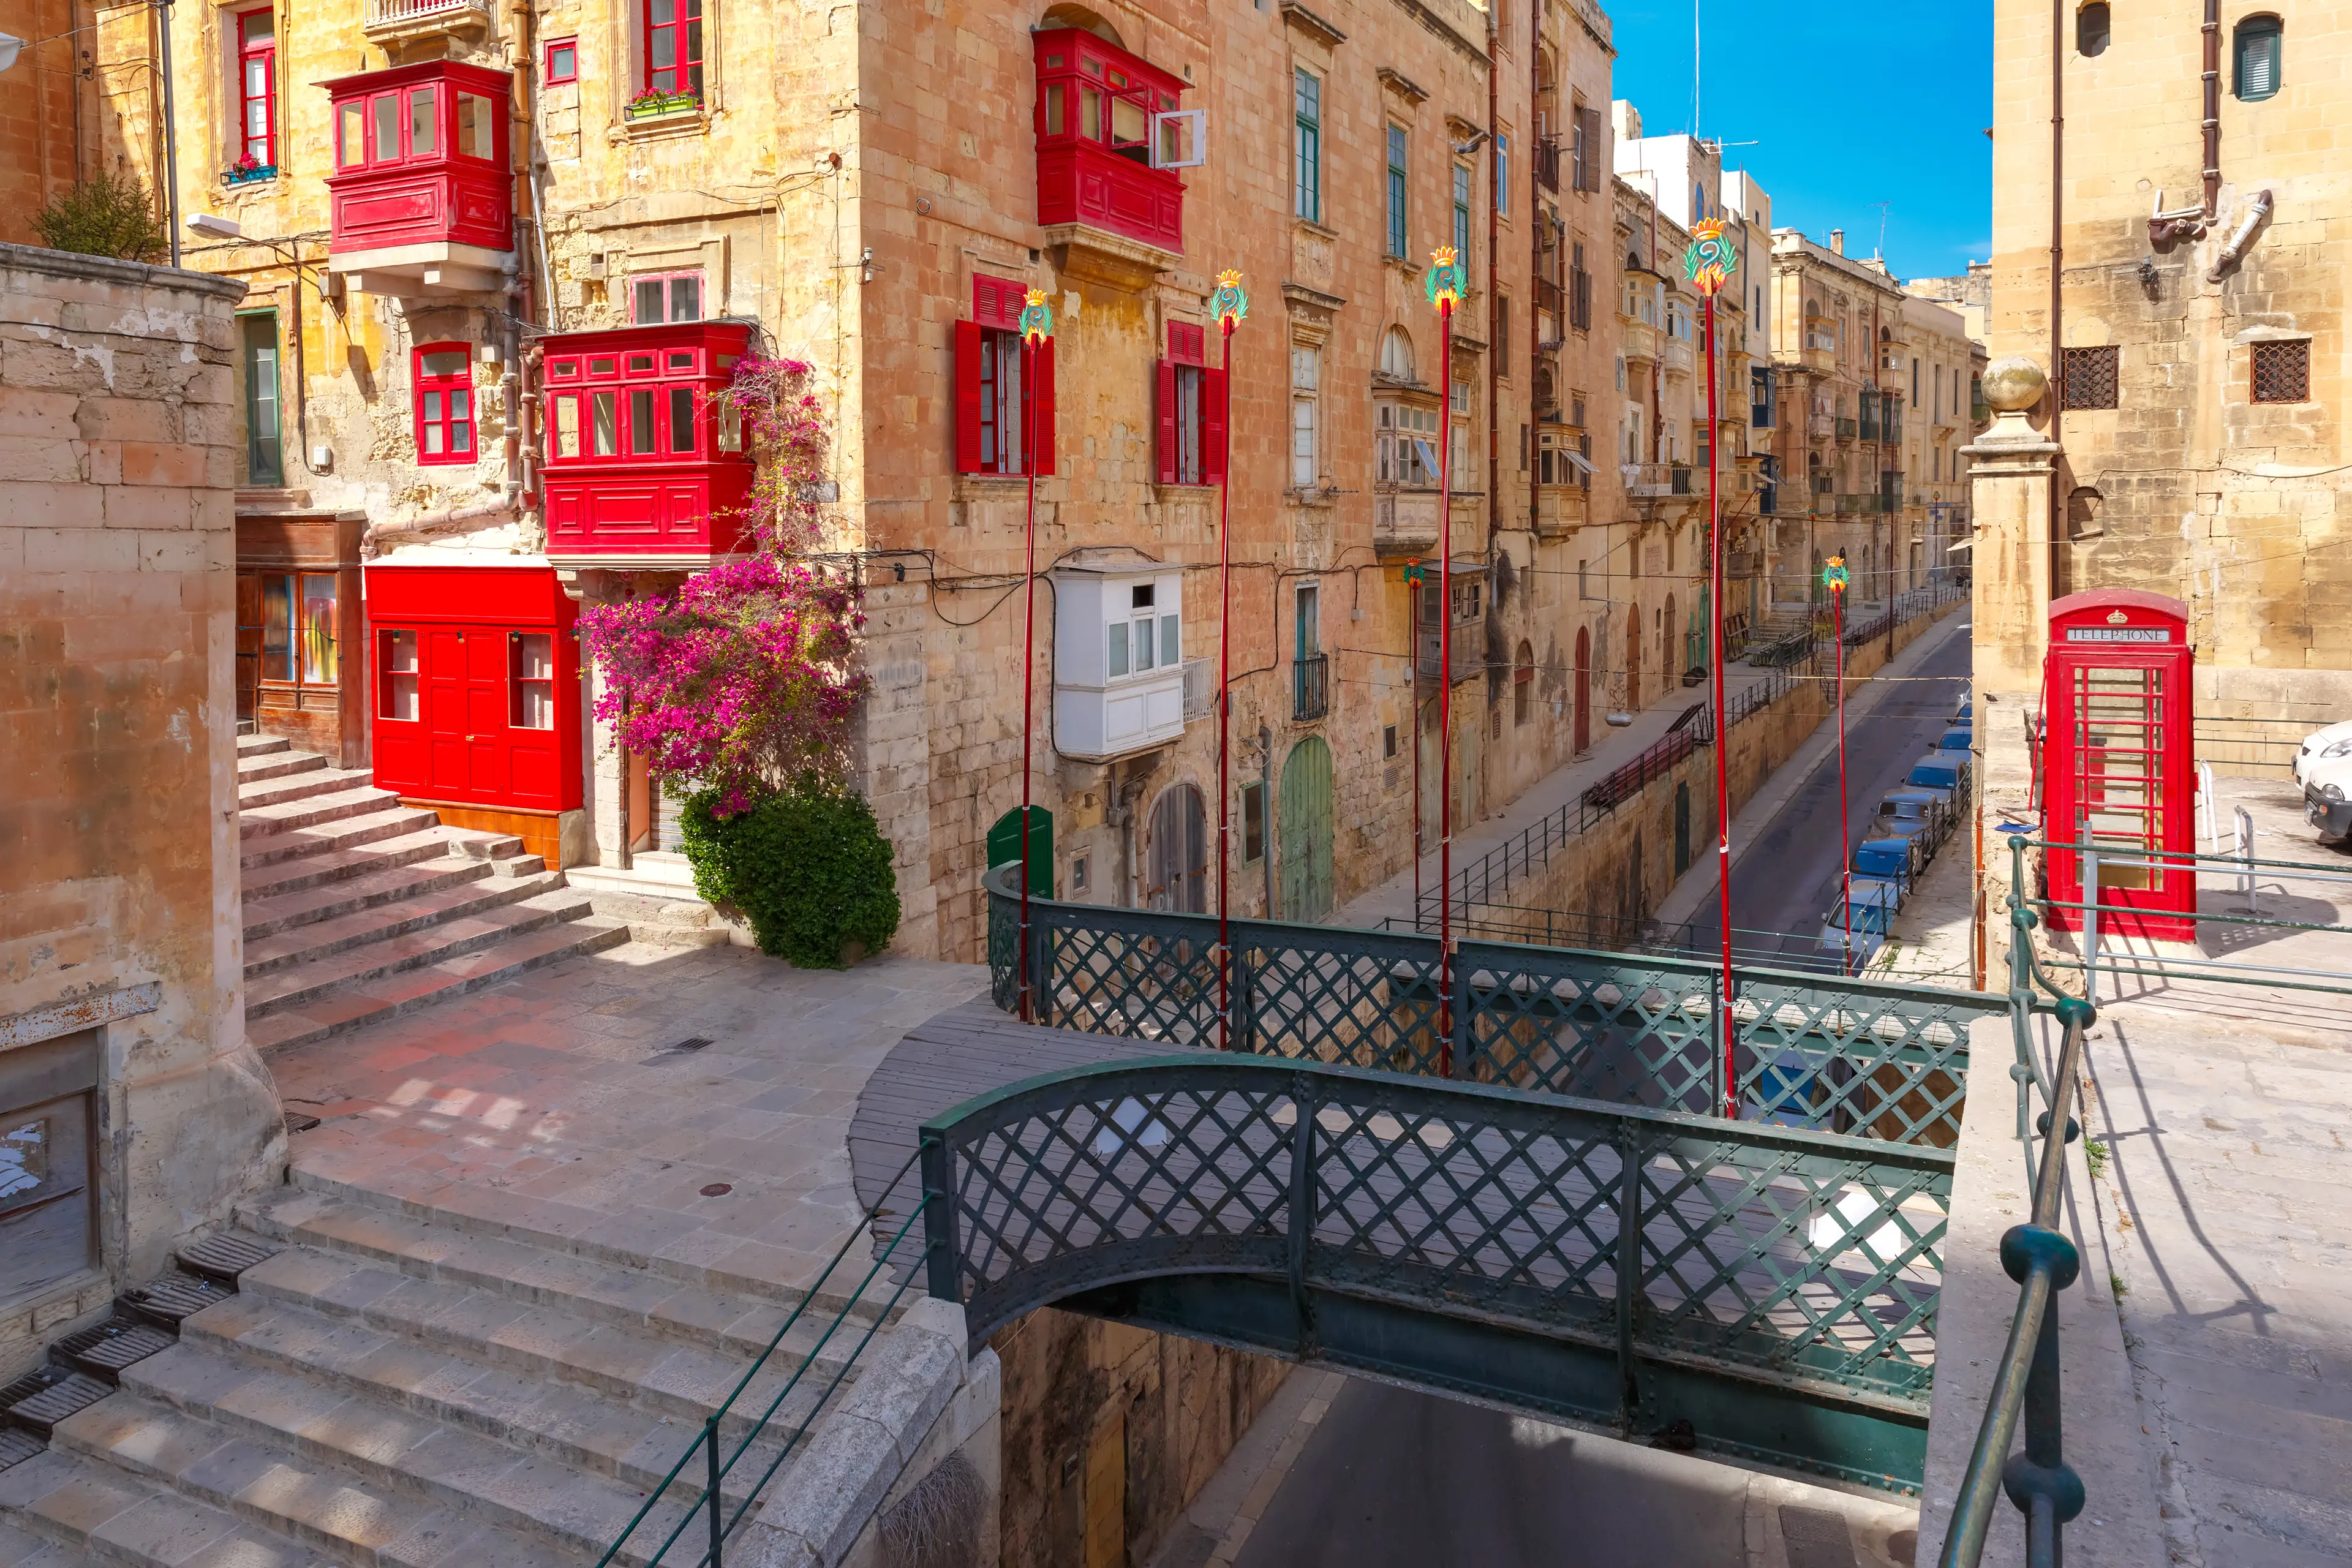 2-Day Solo Adventure: Unexplored Valletta, Malta - Nature & Nightlife